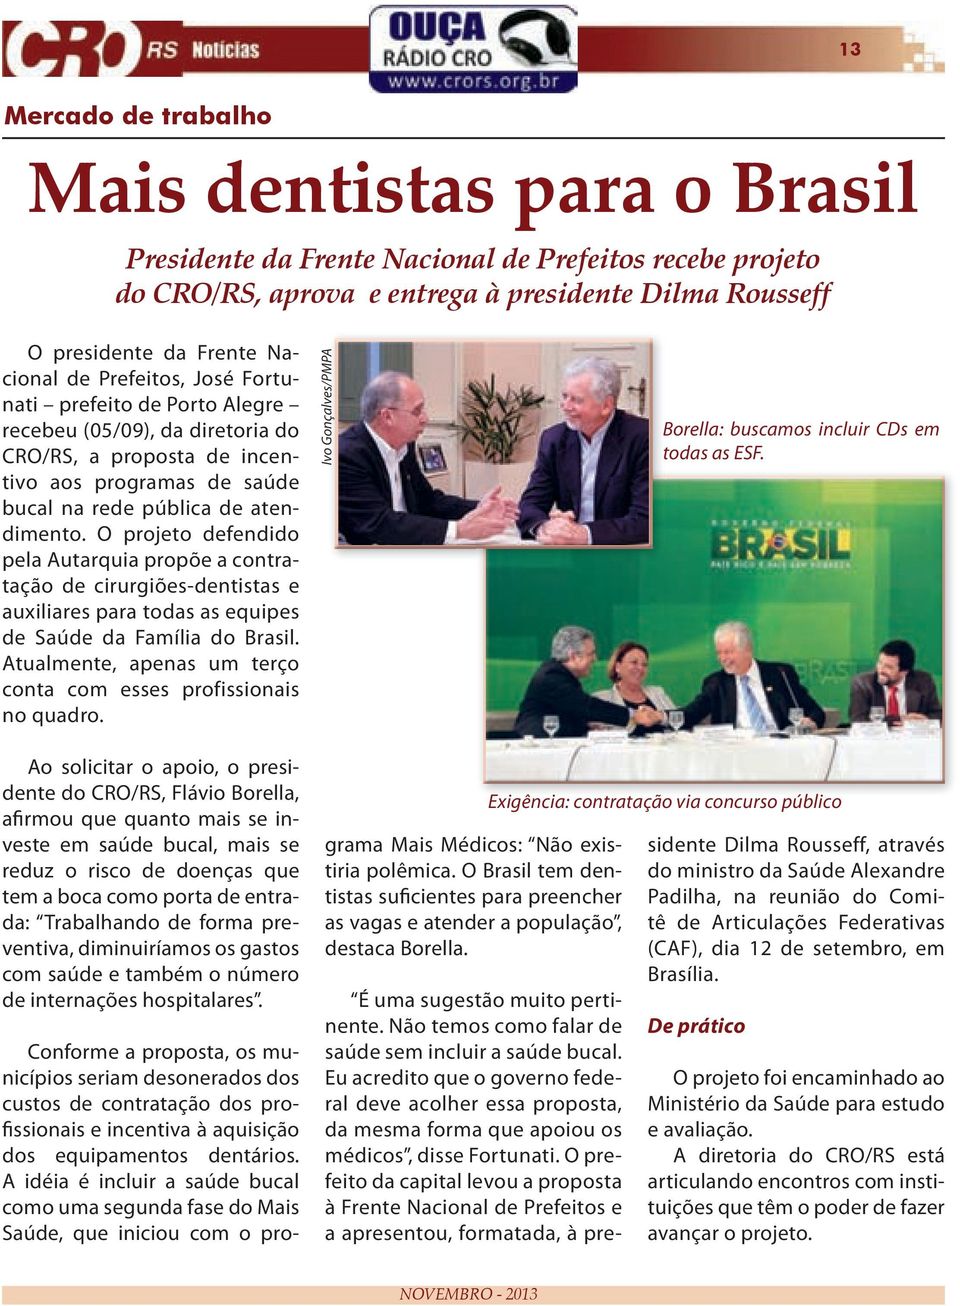 O projeto defendido pela Autarquia propõe a contratação de cirurgiões-dentistas e auxiliares para todas as equipes de Saúde da Família do Brasil.